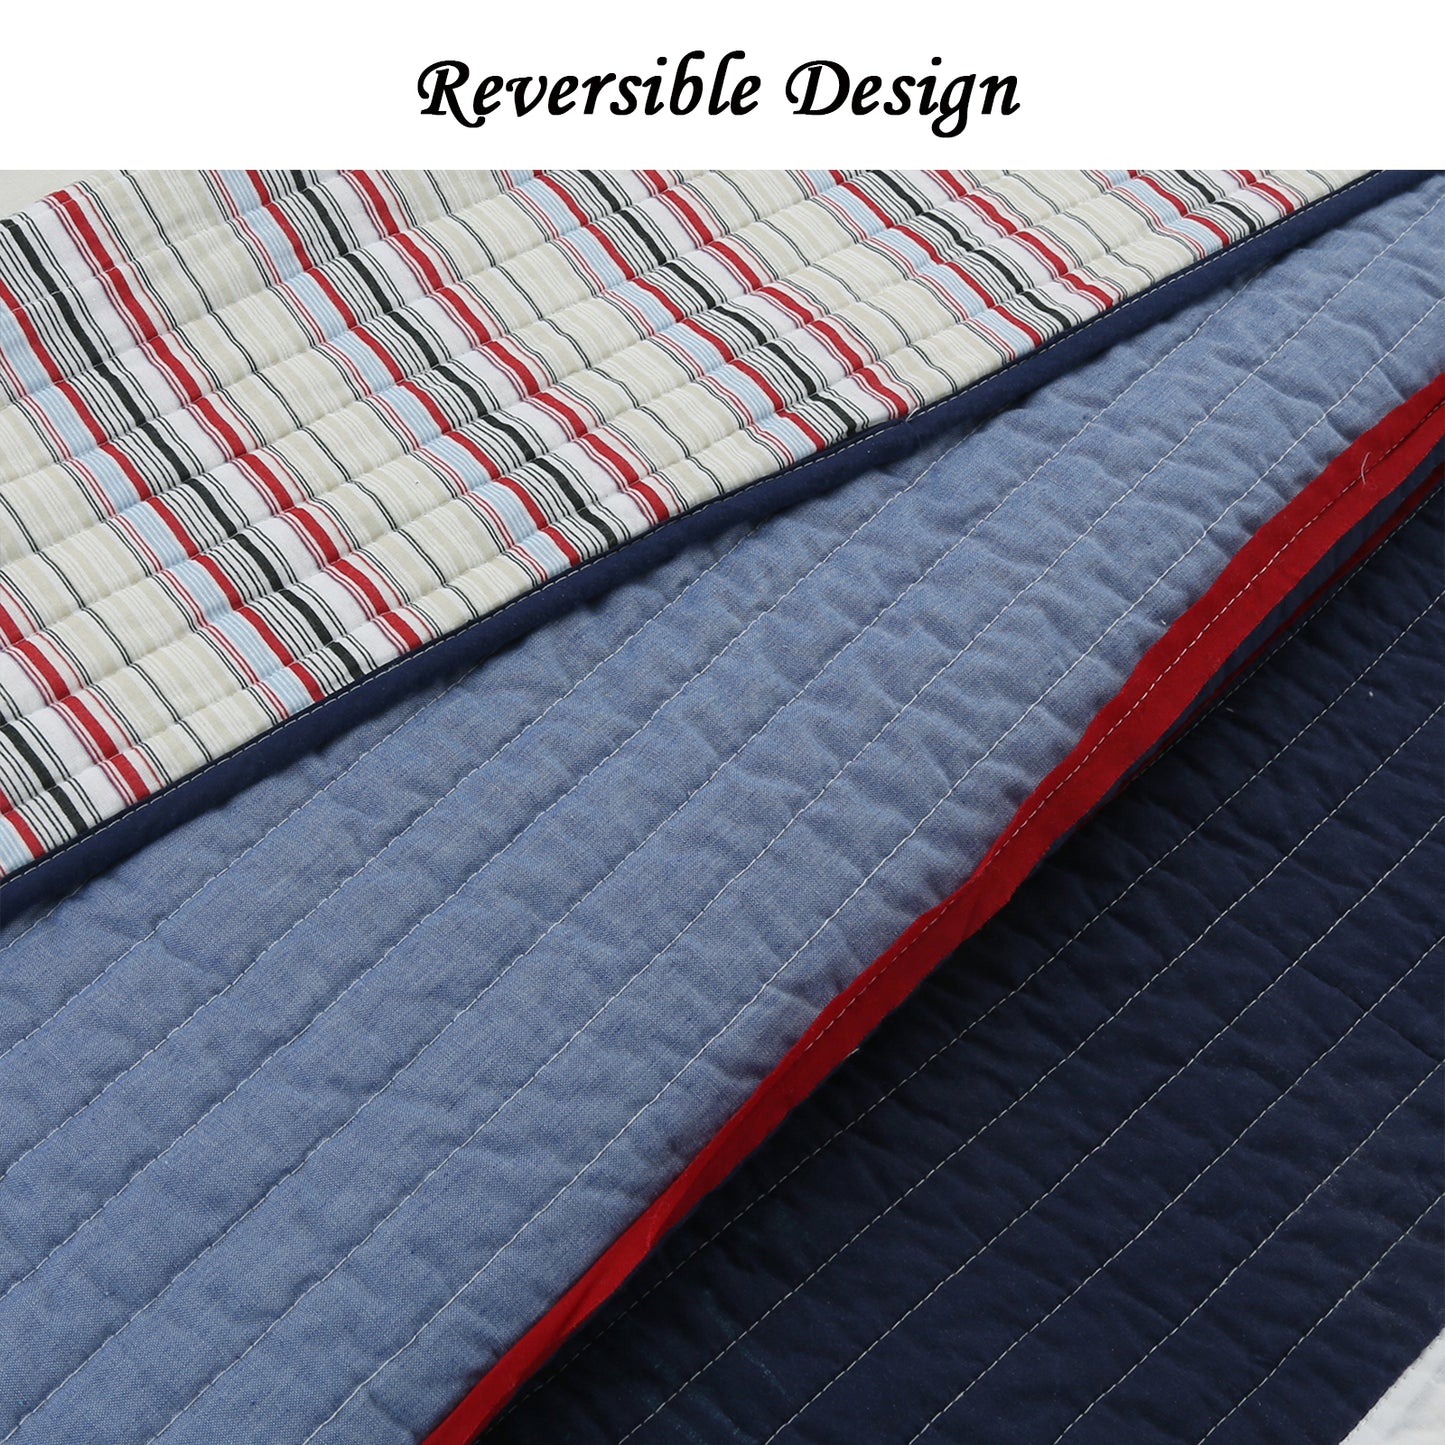 Levi Jean Stripped Denim Blues Cotton Reversible Quilt Bedding Set